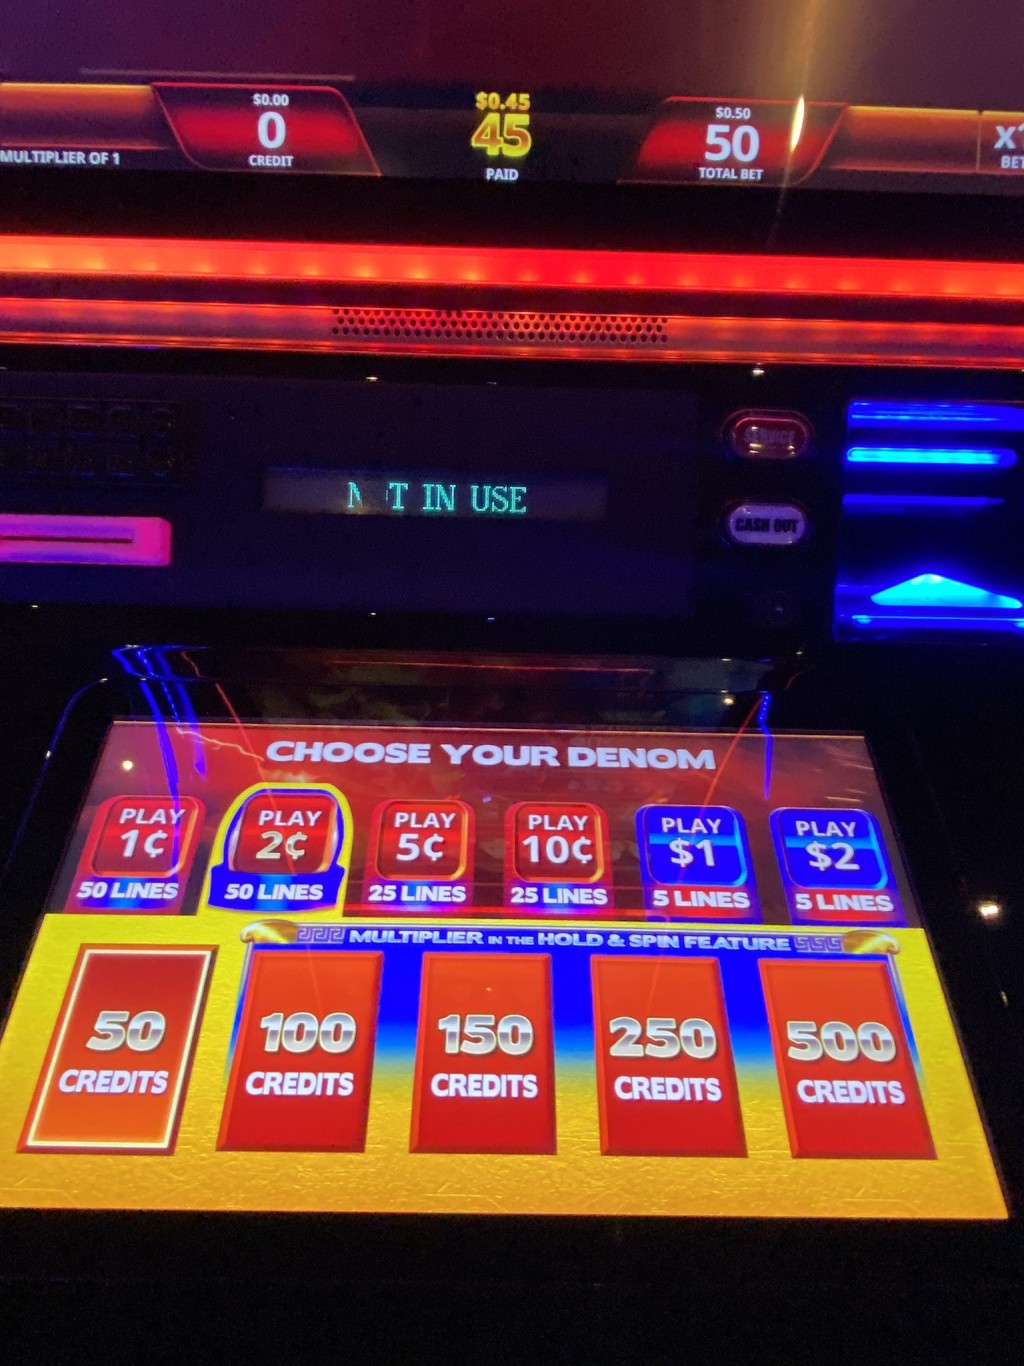 赌场游戏机显示暂停使用。 X